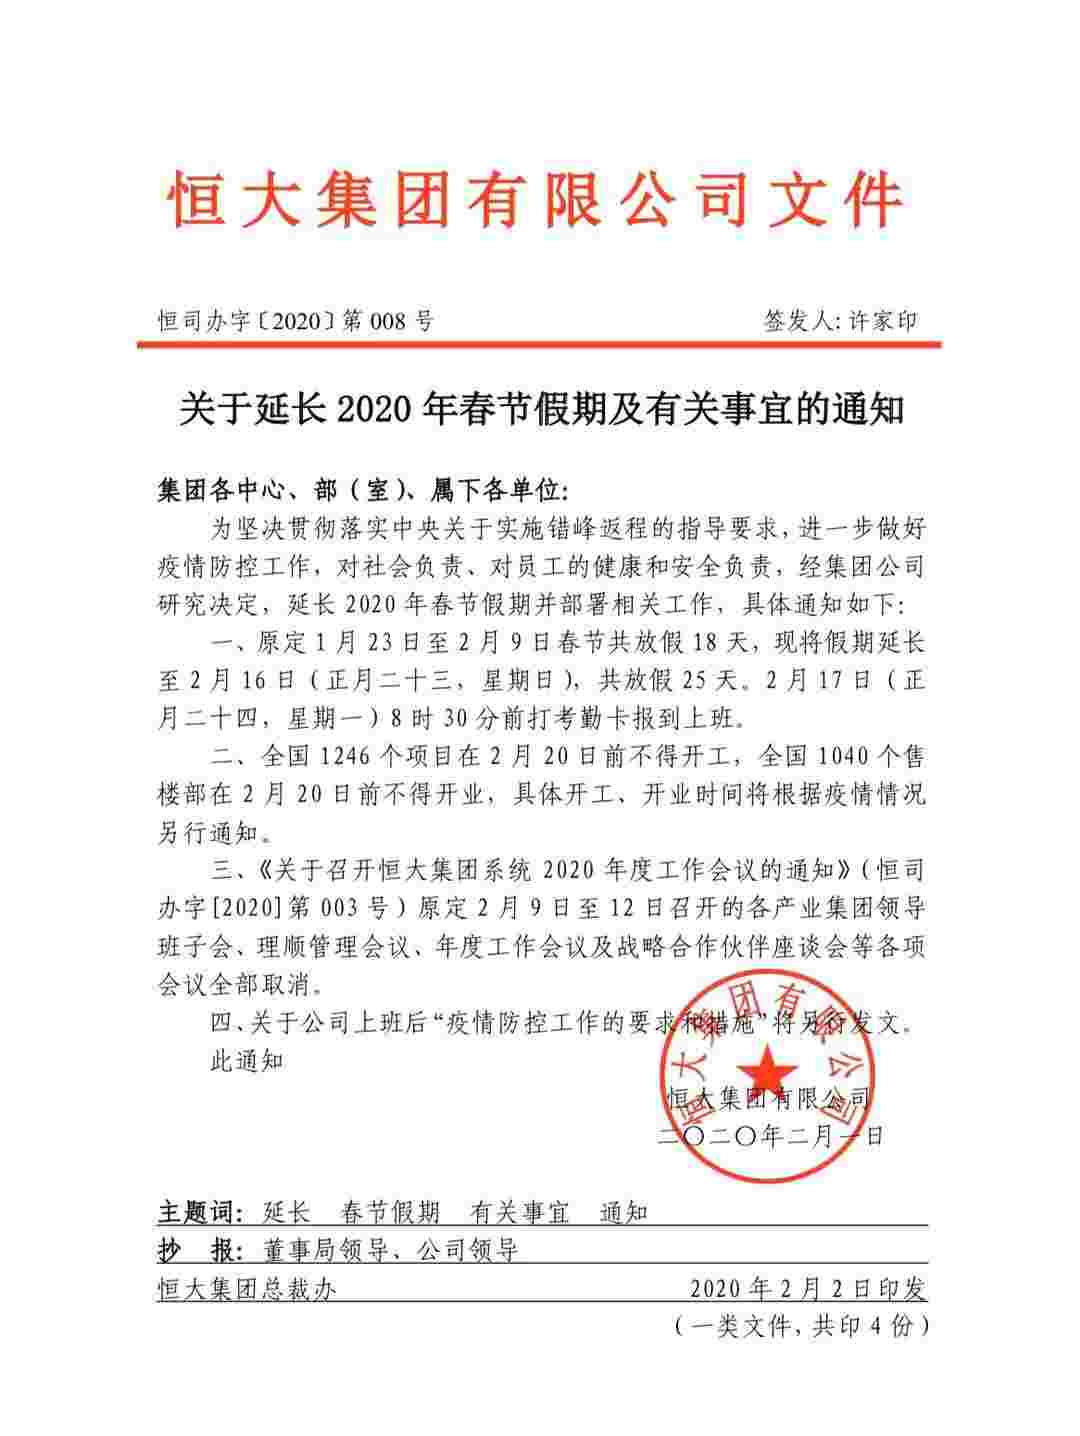 恒大春节假期延长至2月16日 25天假期助力抗疫